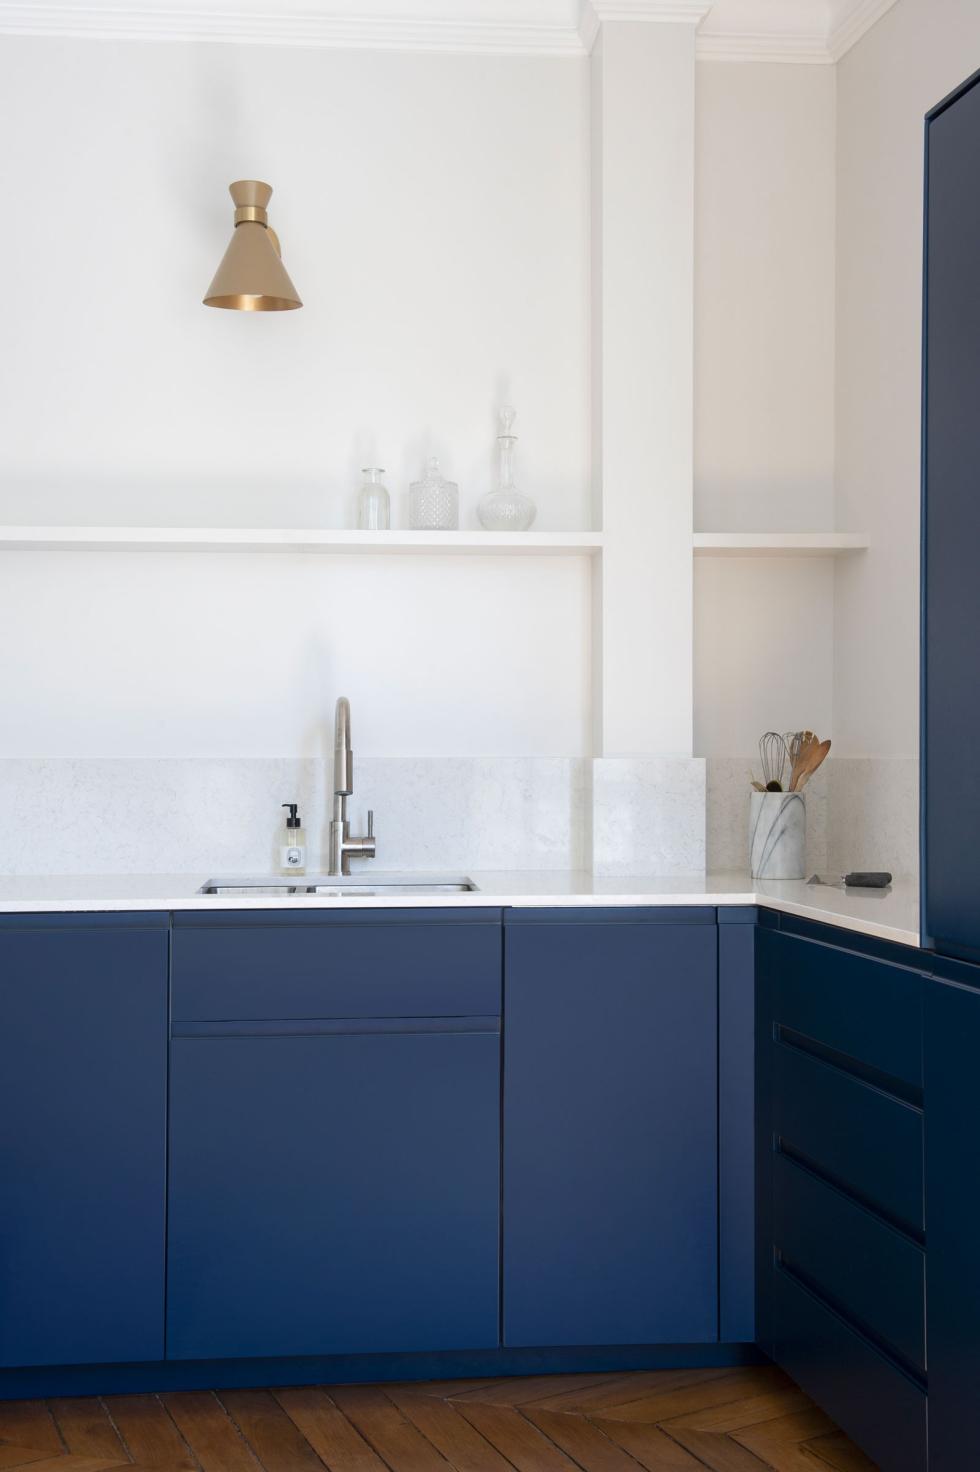 Küche in Blau 02 - Bleu nuit von Camille Gabrielle - Fotos von Flora Fourcade